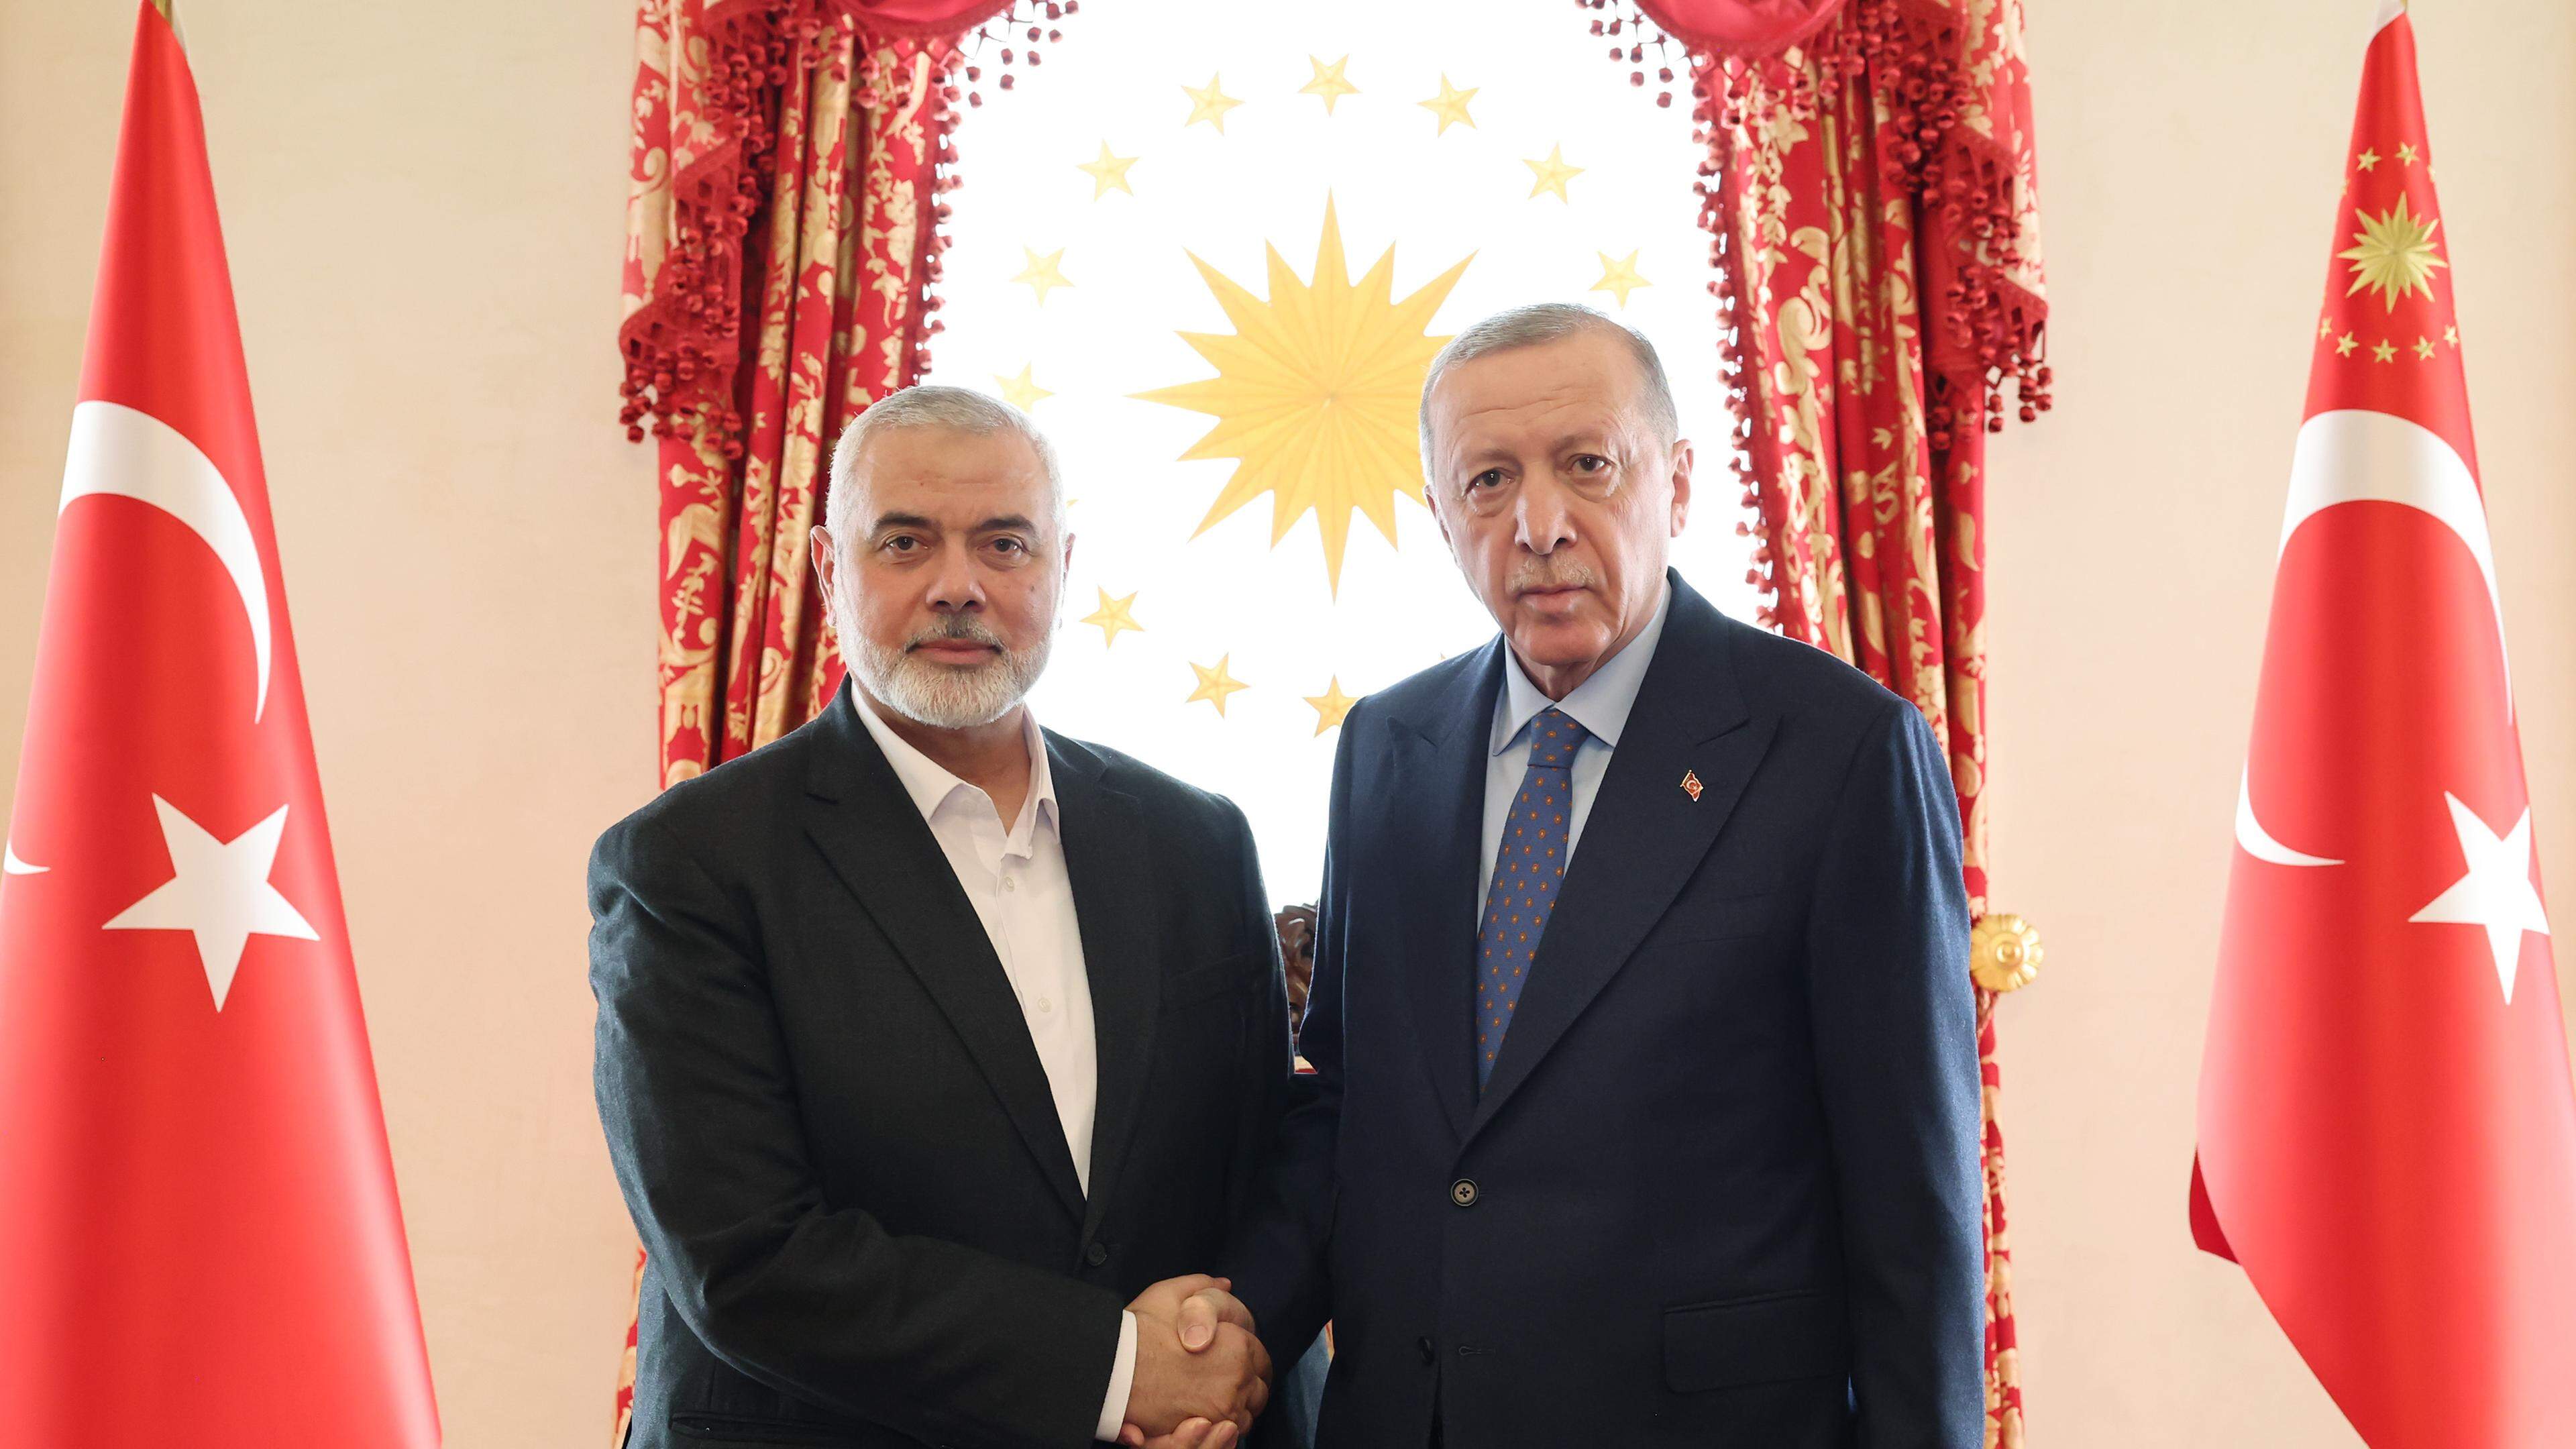 Dass die Türkei sich der Klage gegen Israel anschließen würde, verwundert Beobachter nicht. Erst im April empfing Erdogan Hamas-Anführer Ismail Haniyeh in seinem Präsidentenpalast in Ankara.